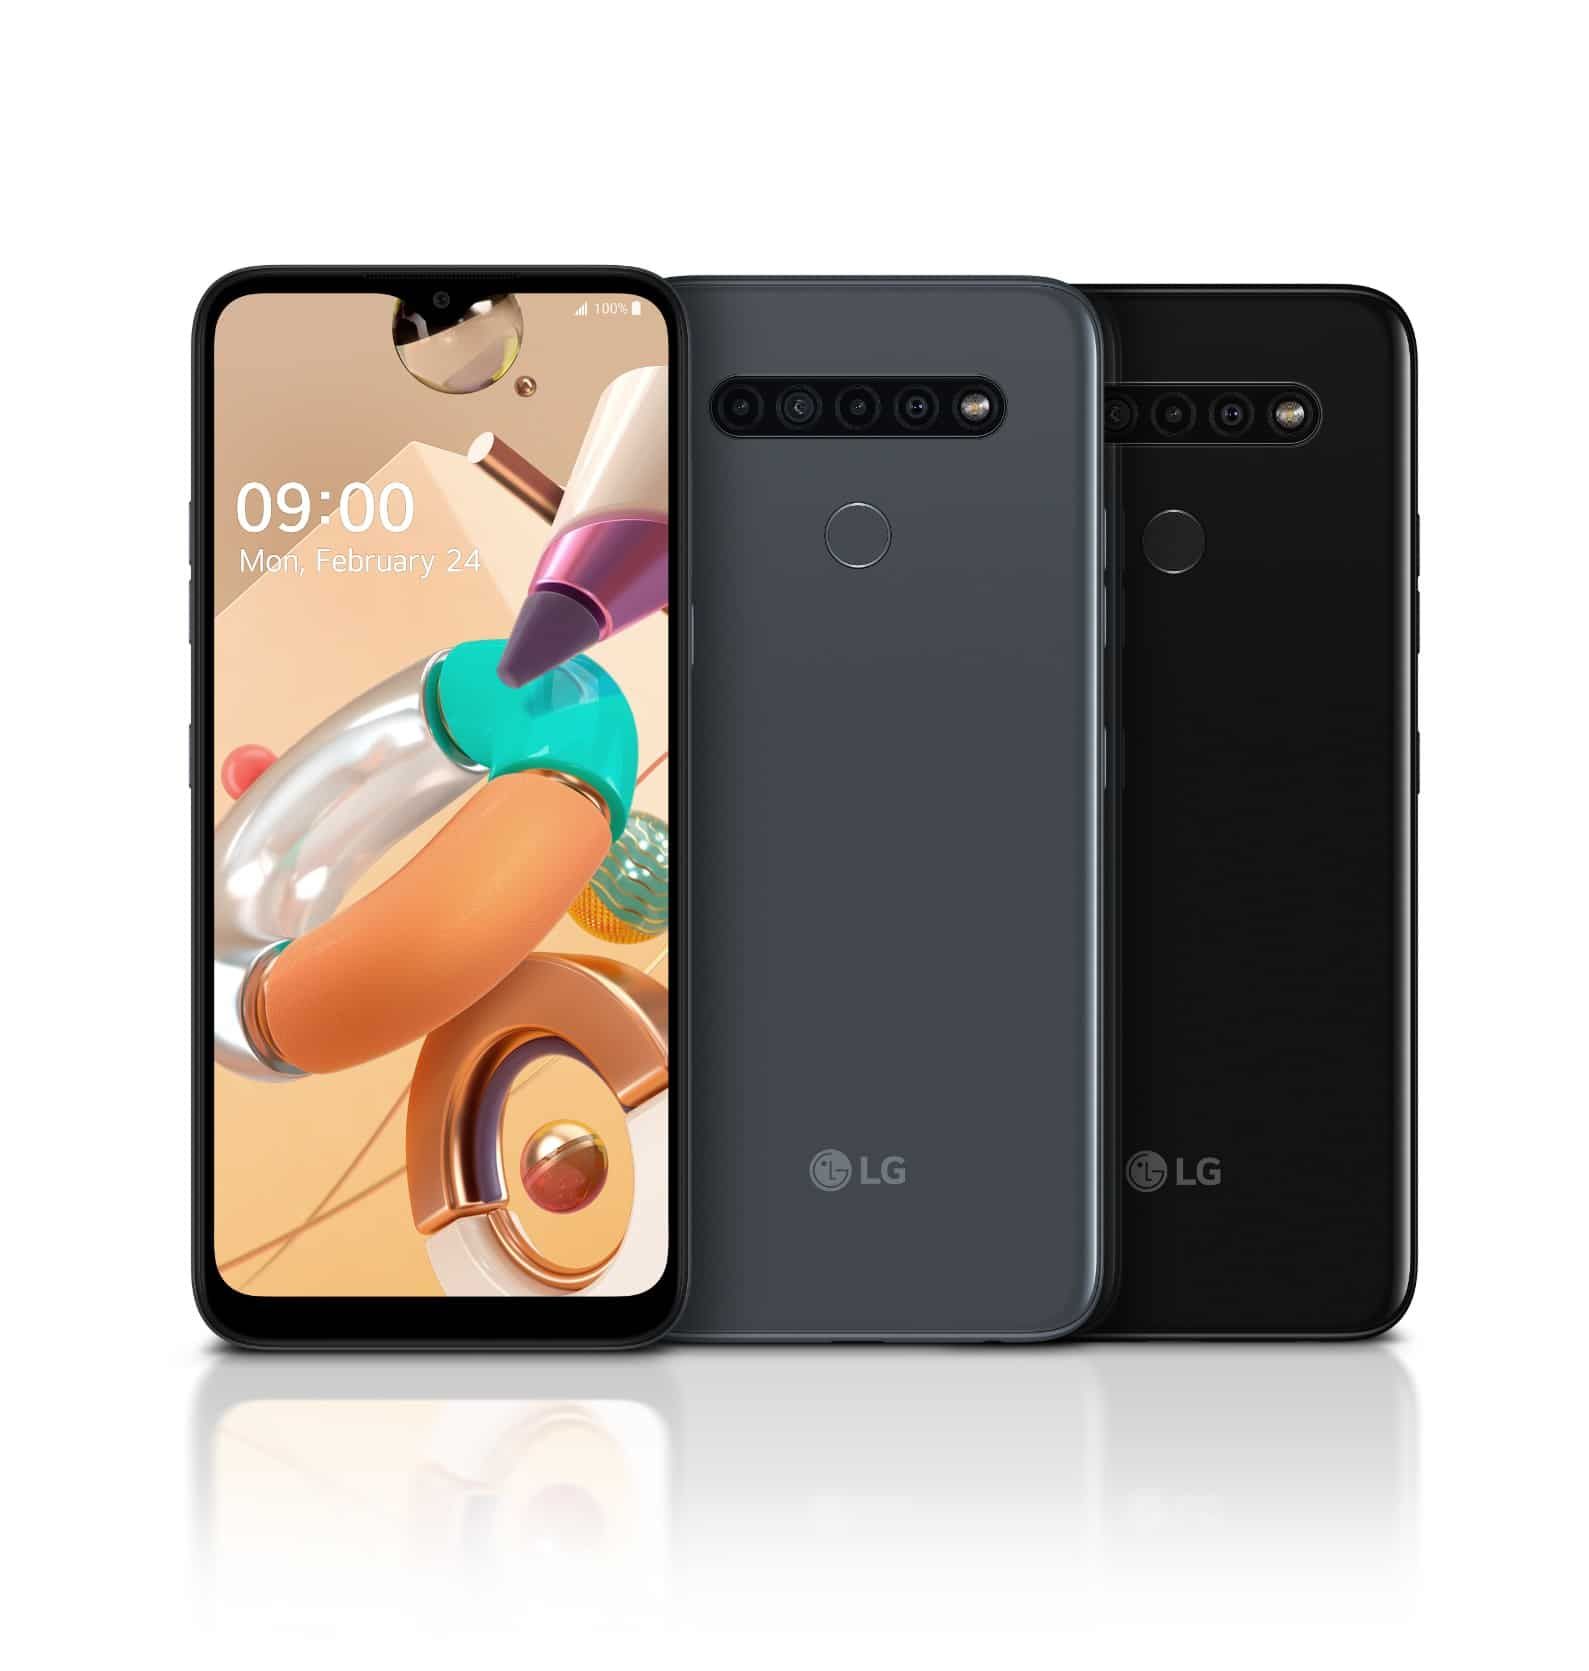 إل جي تعلن عن ثلاثة هواتف جديدة من سلسلة LG K